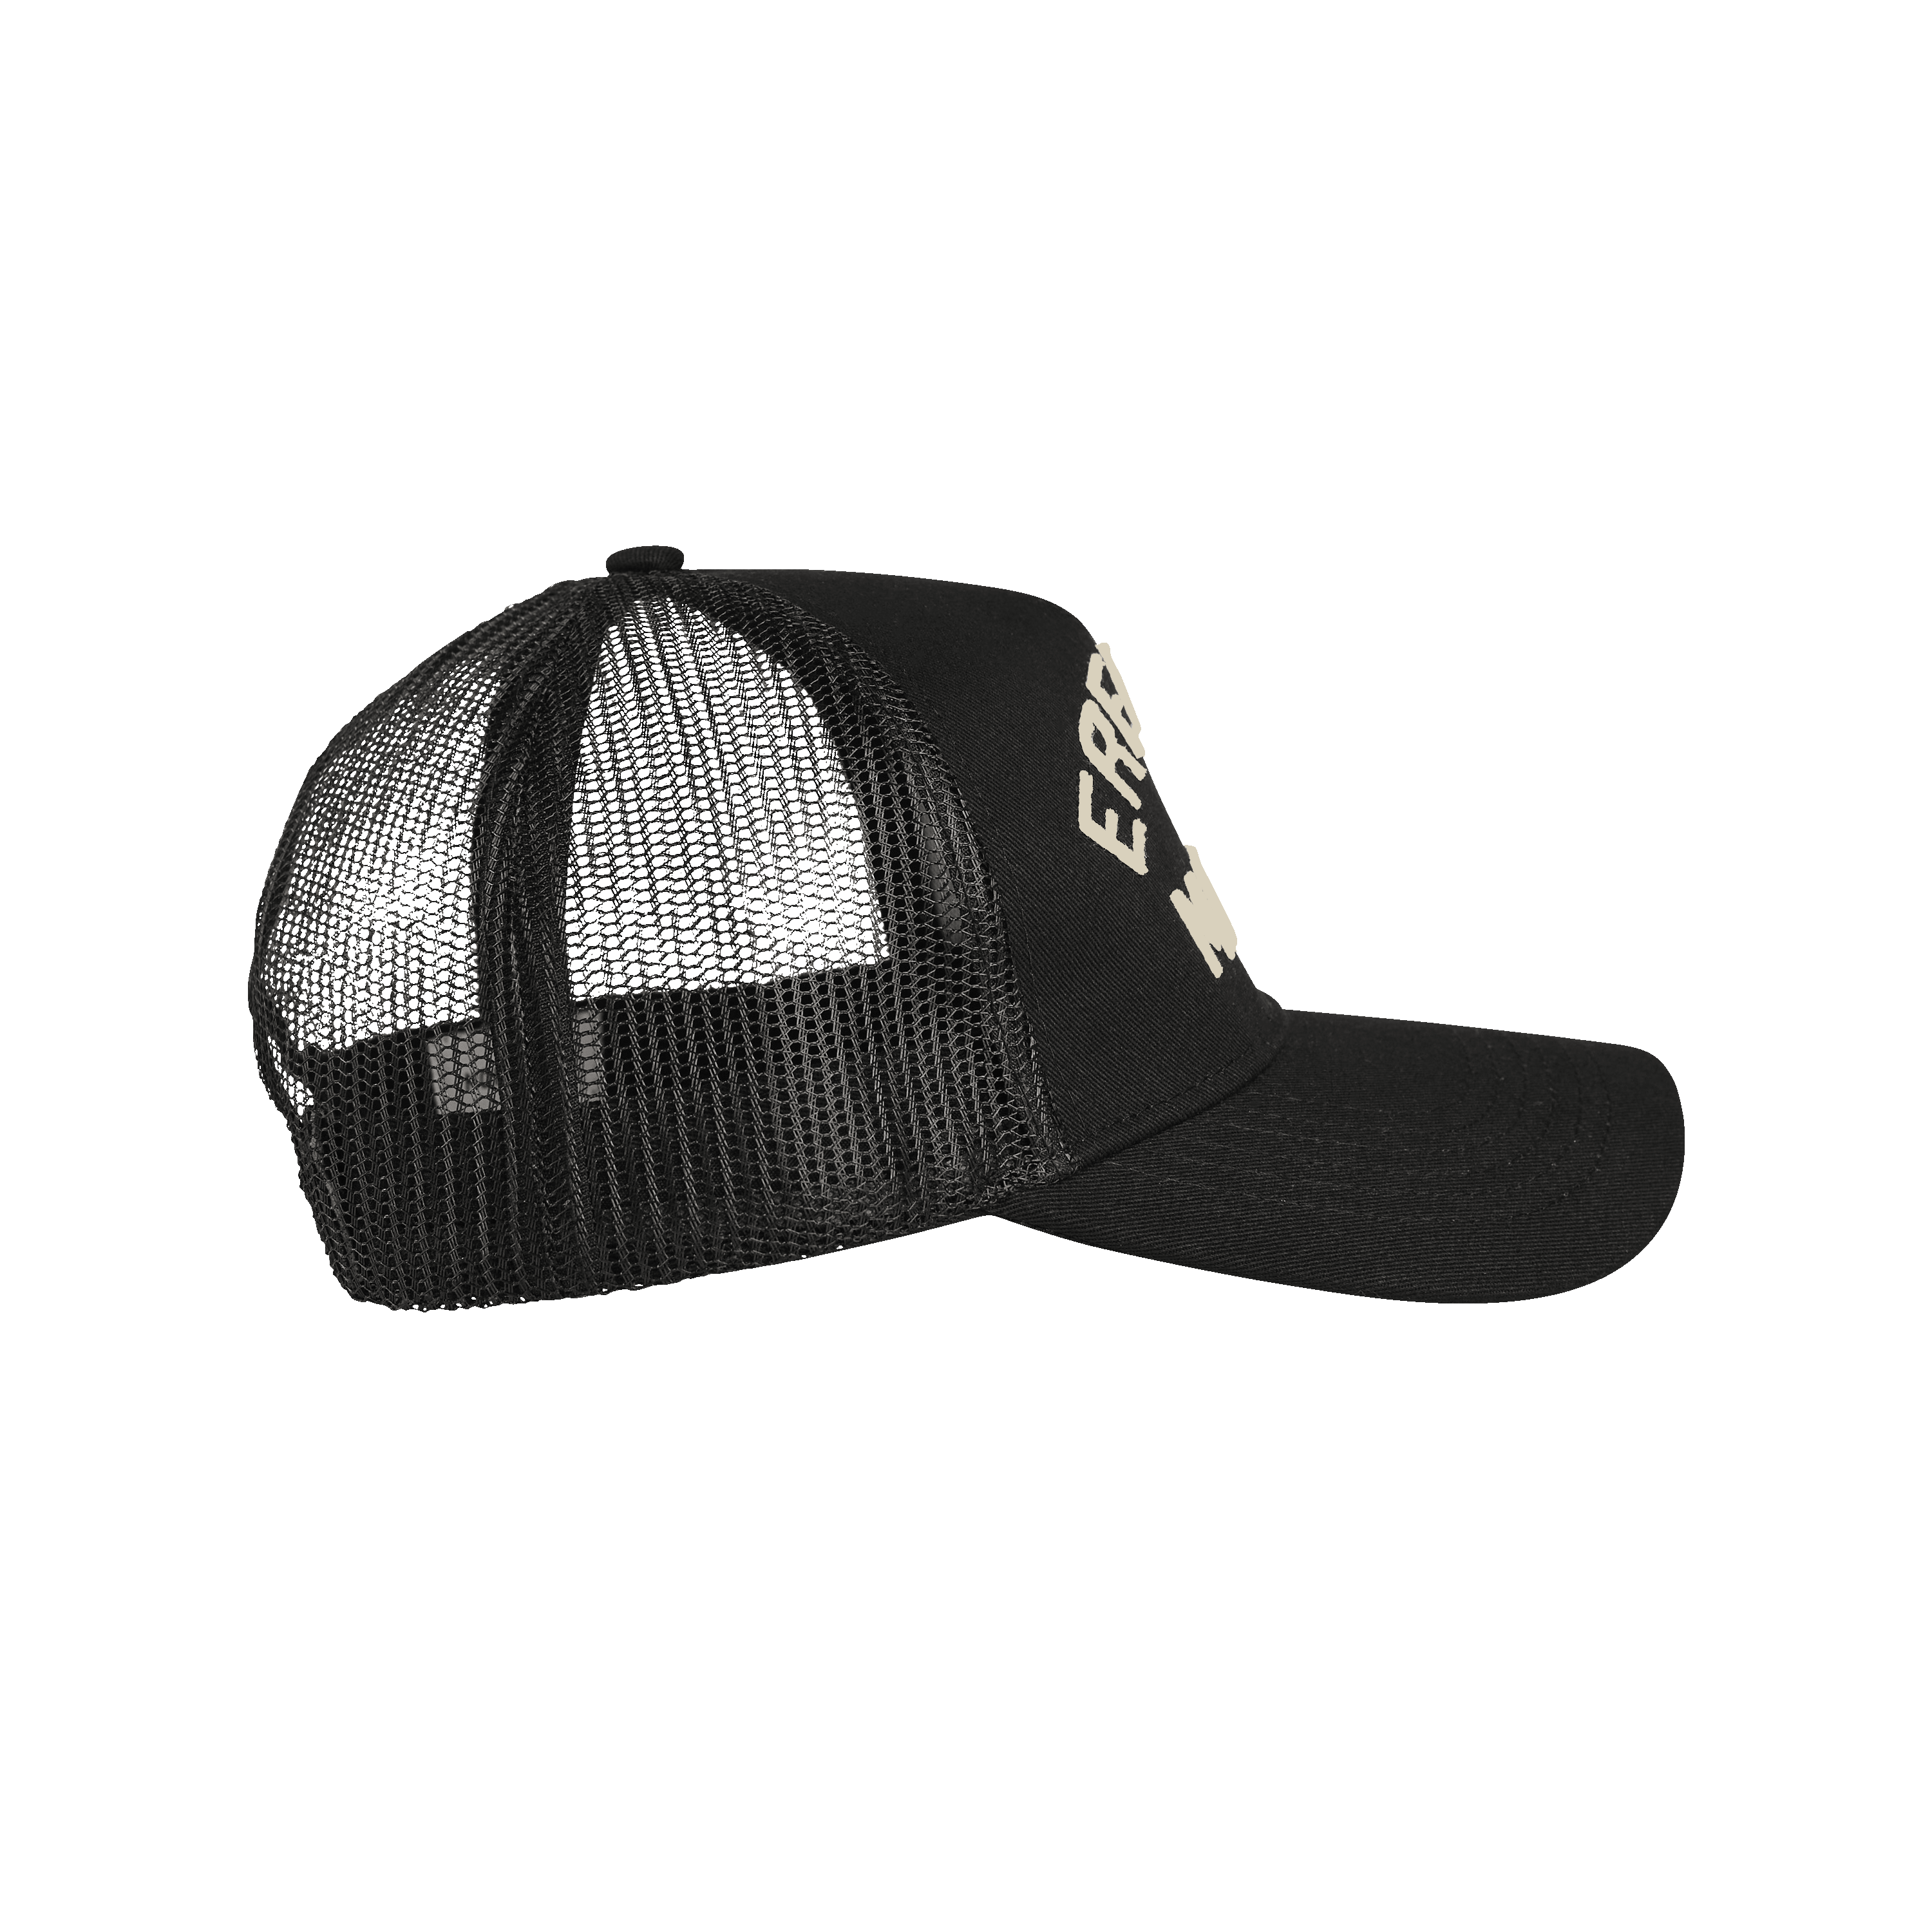 Erewhon -Erewhon Market Trucker Hat - Black